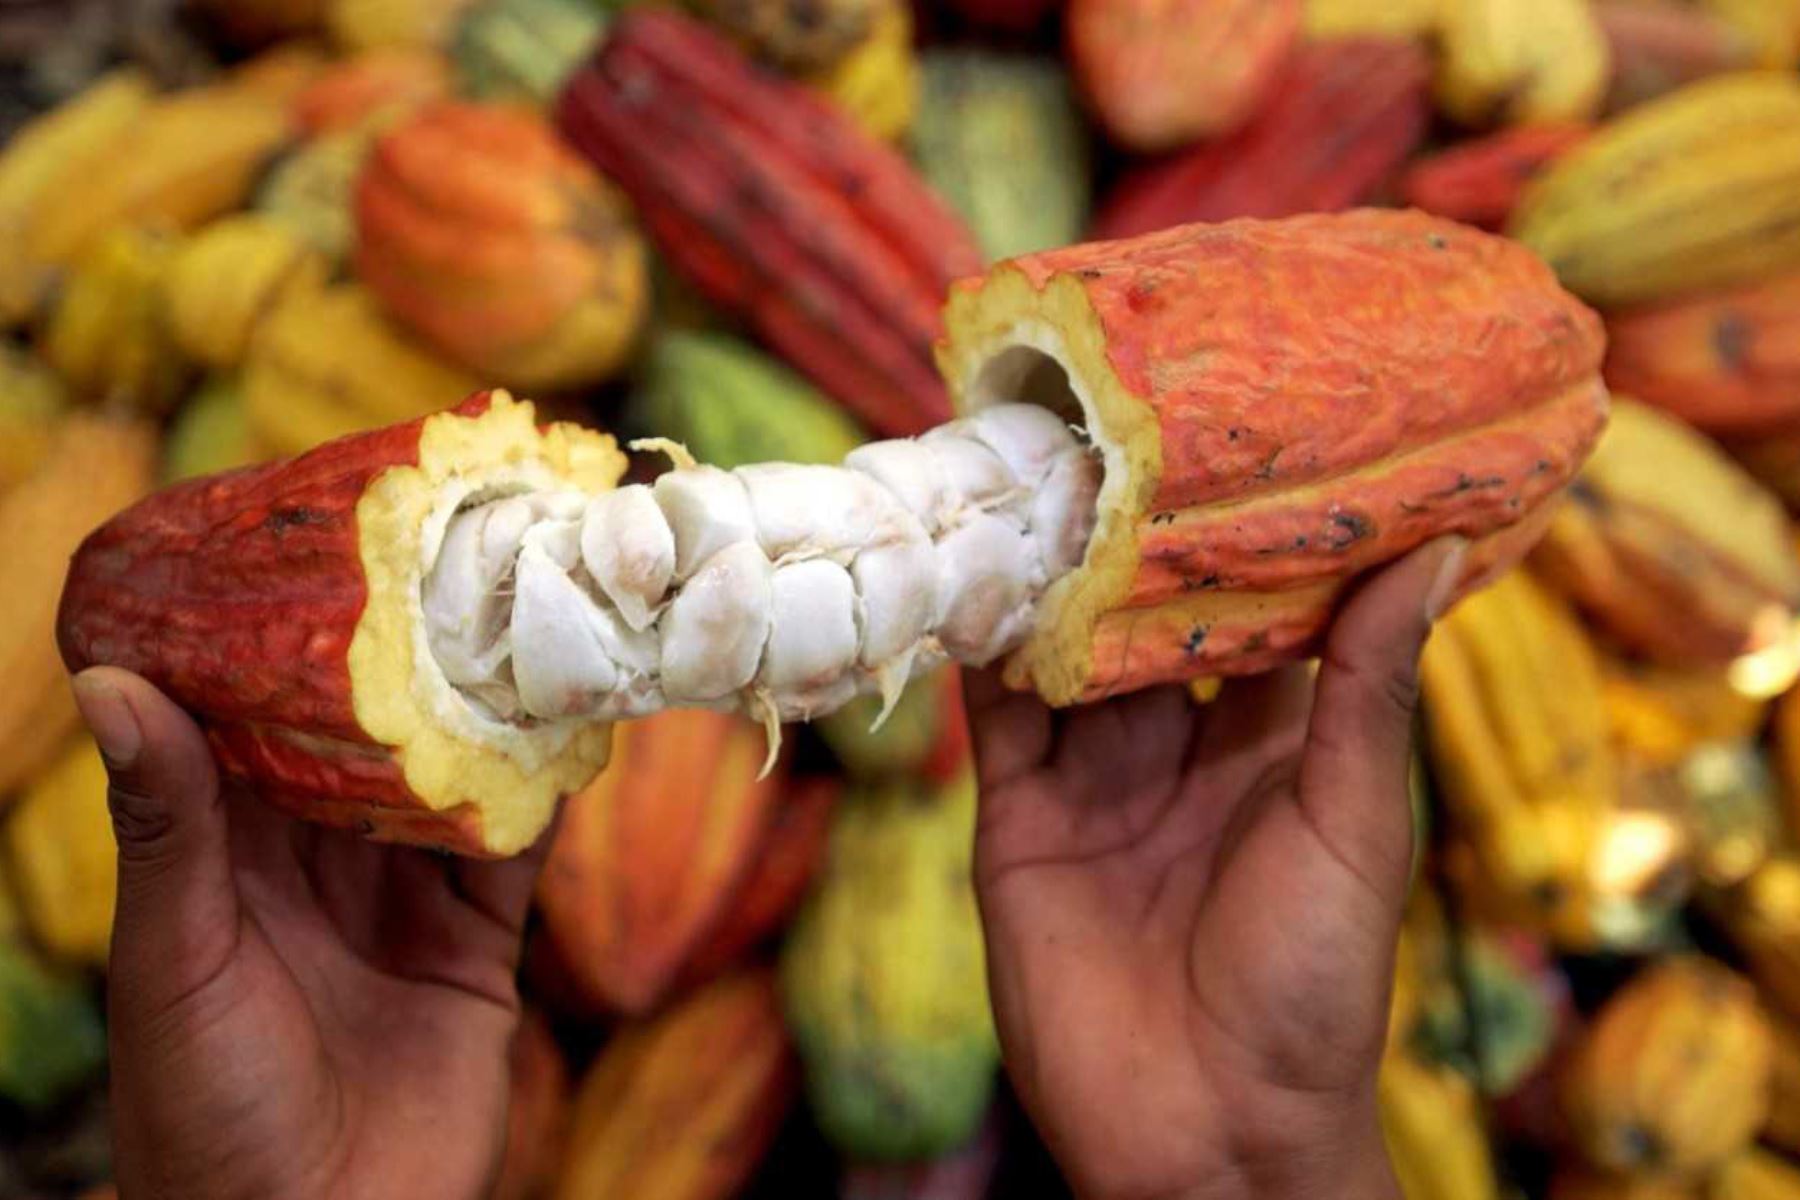 La Asociación de Productores Ecológicos de Cacao Medio Urubamba (APECMU), se dedica hace más de diez años al cultivo de cacao orgánico certificado en parcelas agroforestales ubicadas en la zona de amortiguamiento del Santuario Nacional Megantoni, ubicado en el distrito de Echarate, provincia de La Convención, región Cusco. ANDINA/Difusión